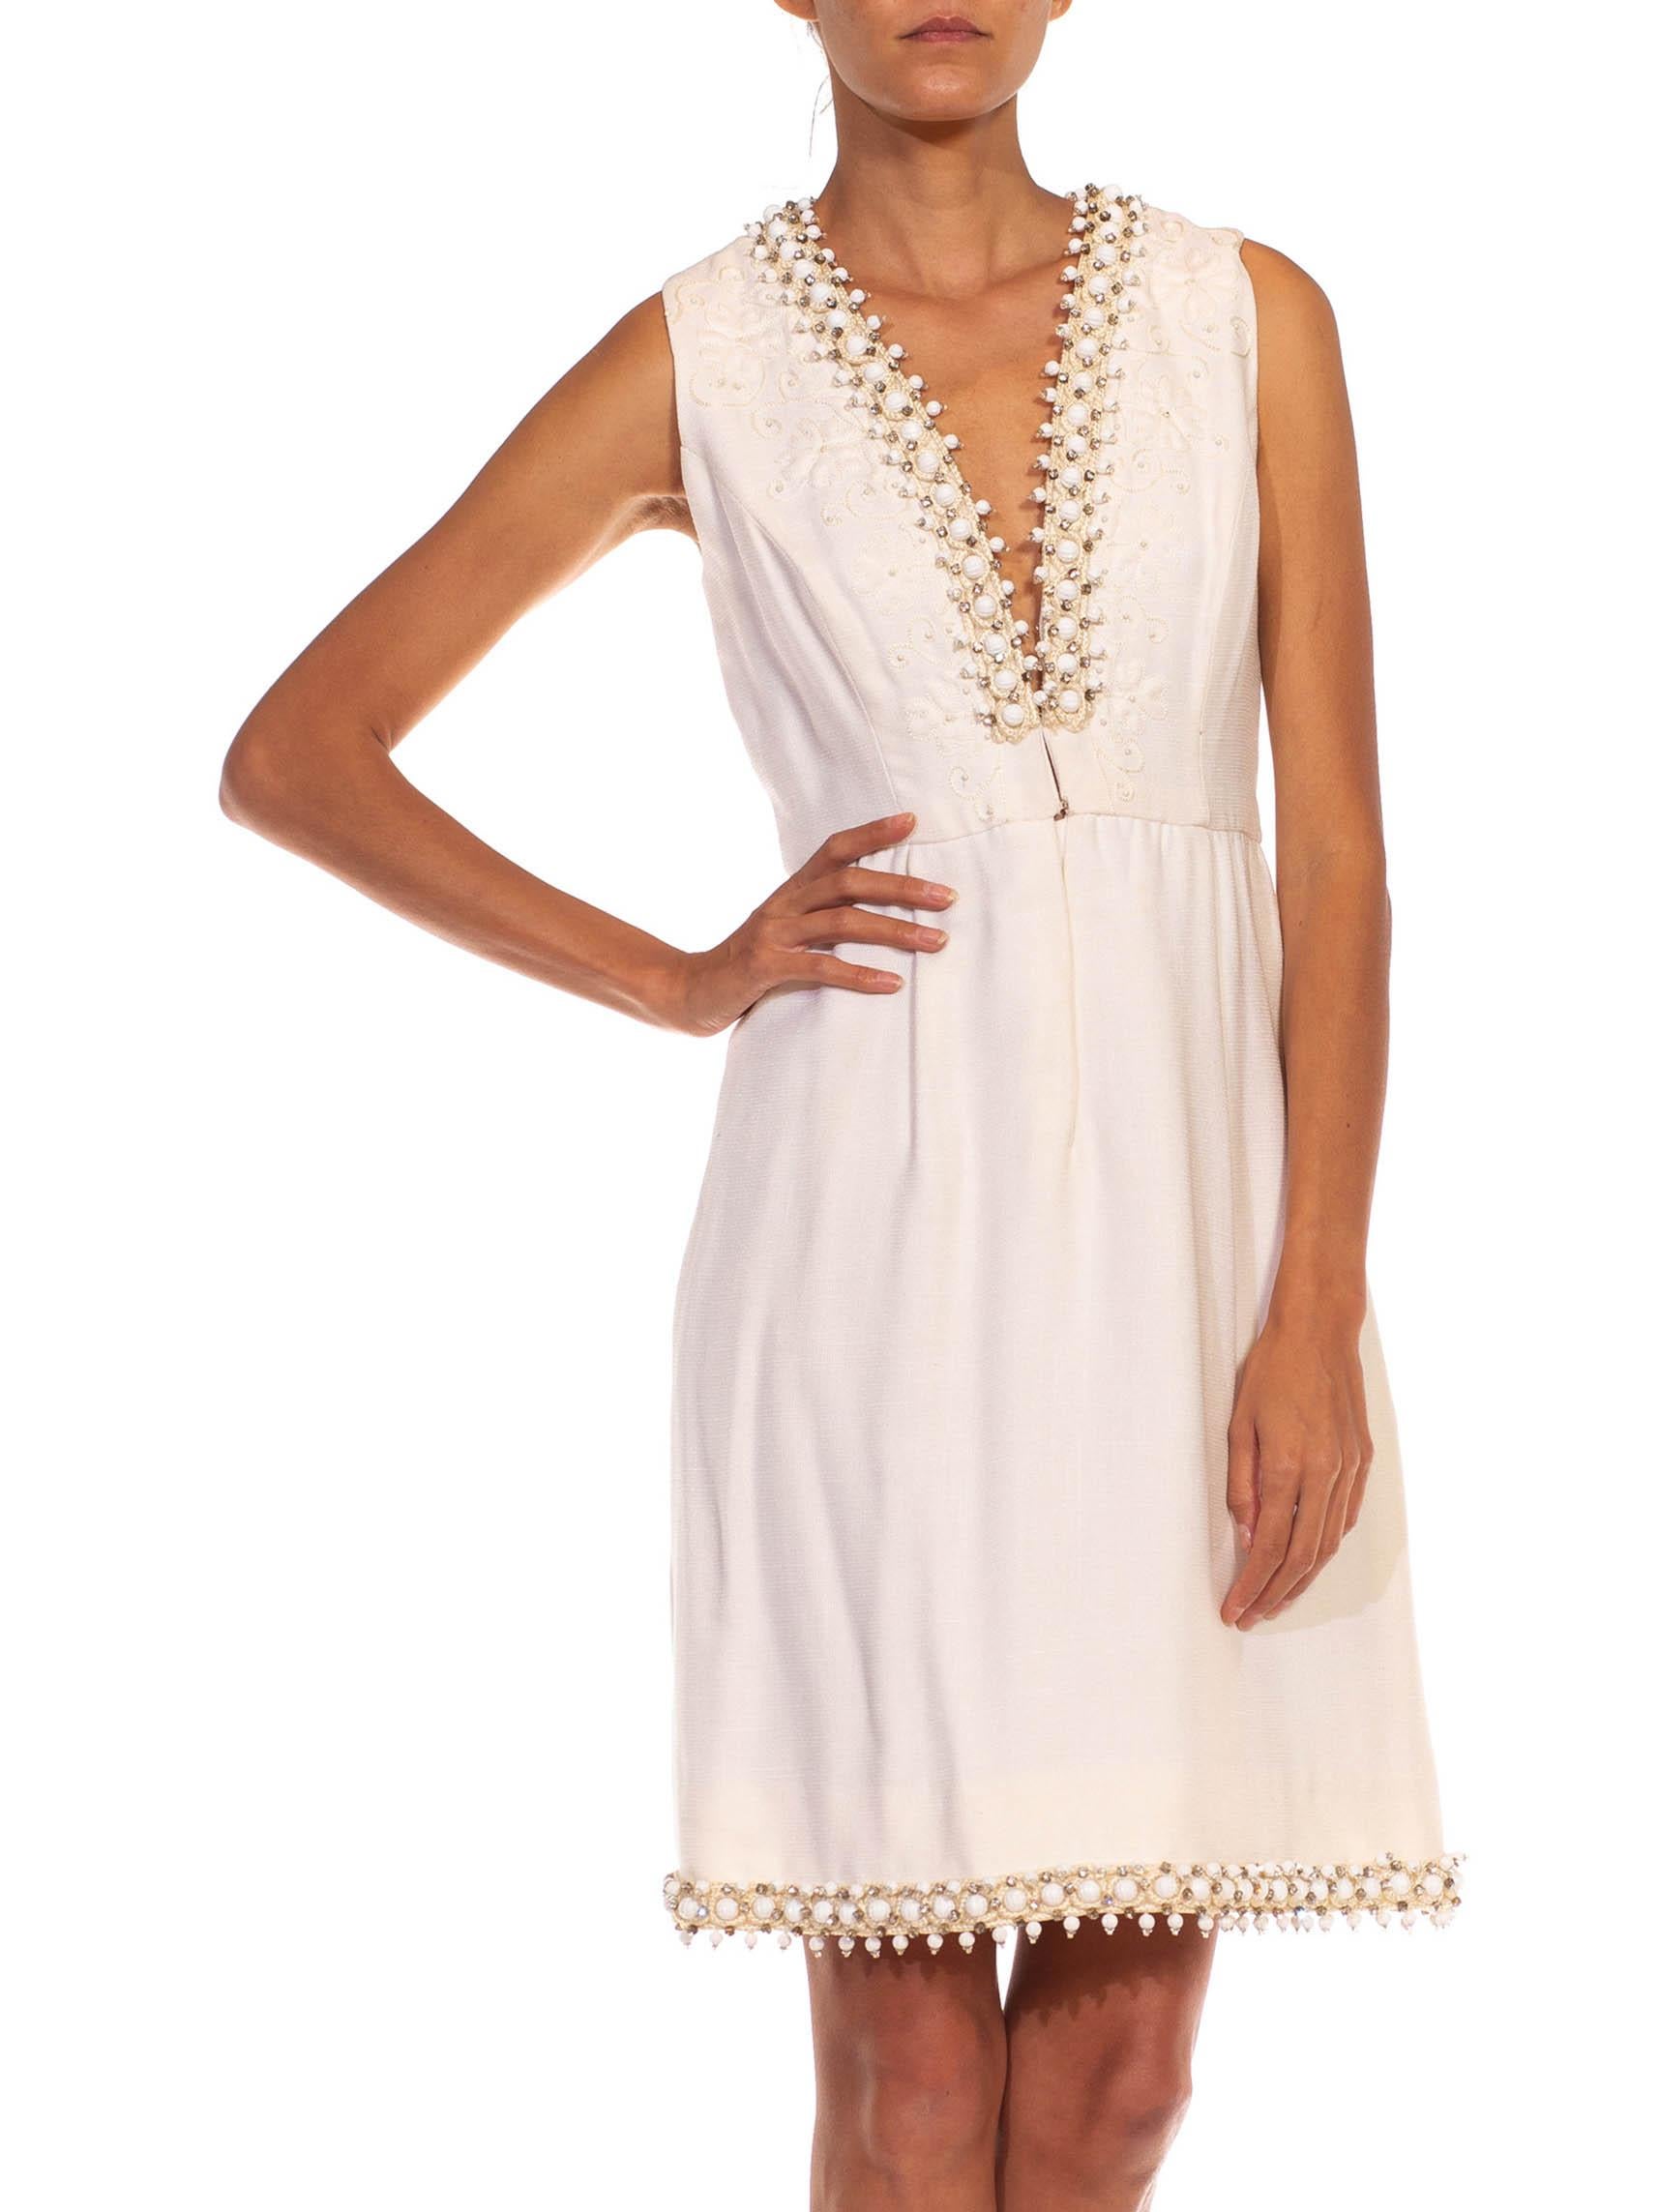 1960S OSCAR DE LA RENTA White Wool Blend Plunging V Neck Mod Dress With Crystals For Sale 4